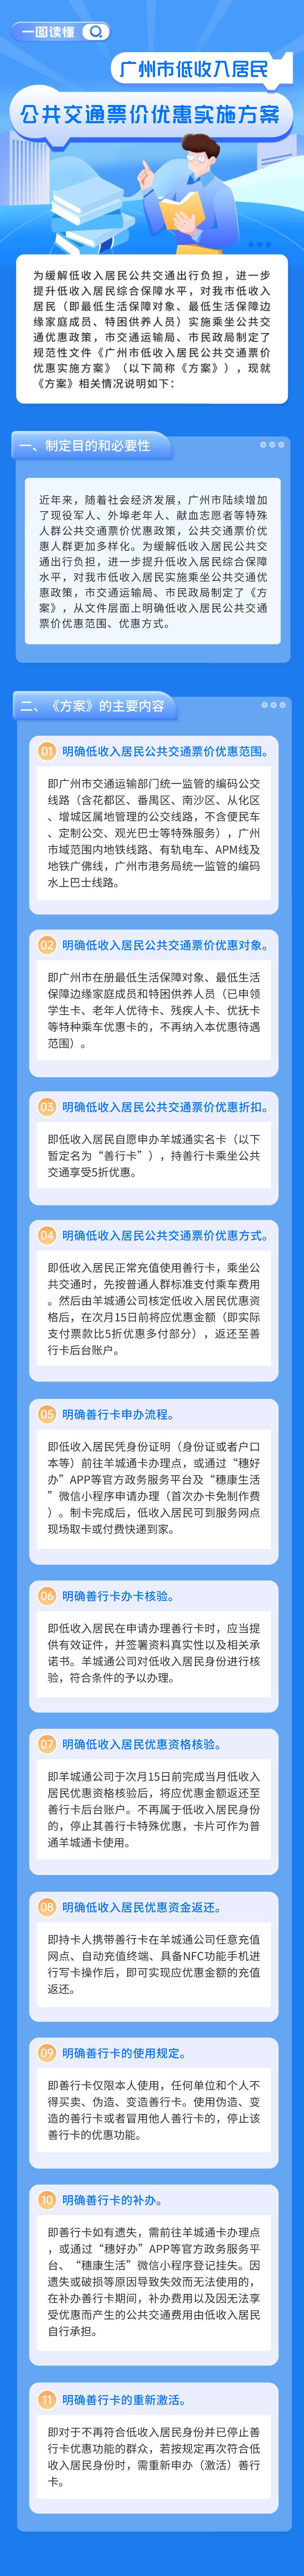 附件2：《广州市低收入居民公共交通票价优惠实施方案》的解读材料（图片版）2.png